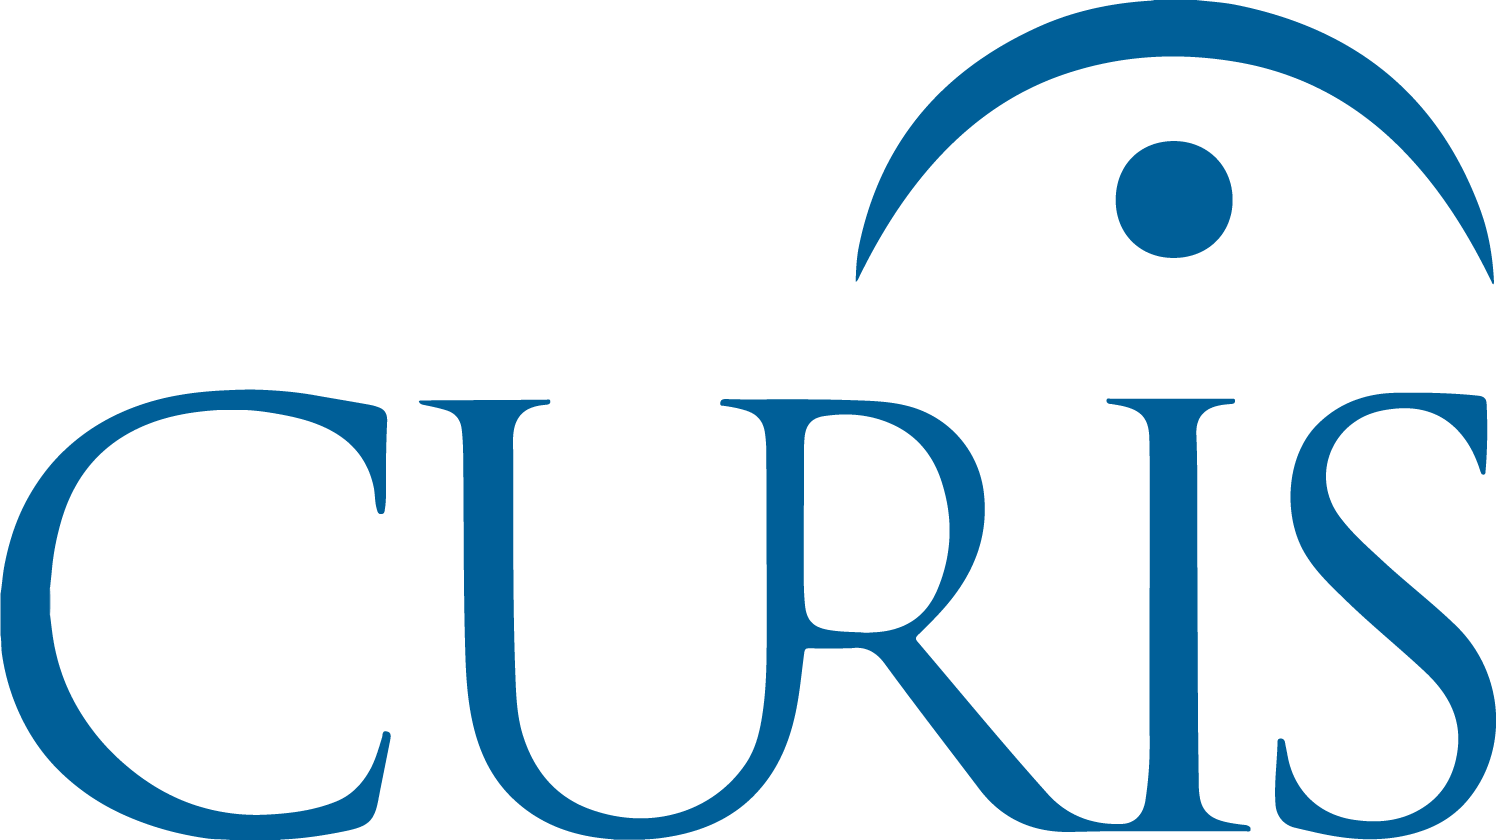 Curis logo large (transparent PNG)